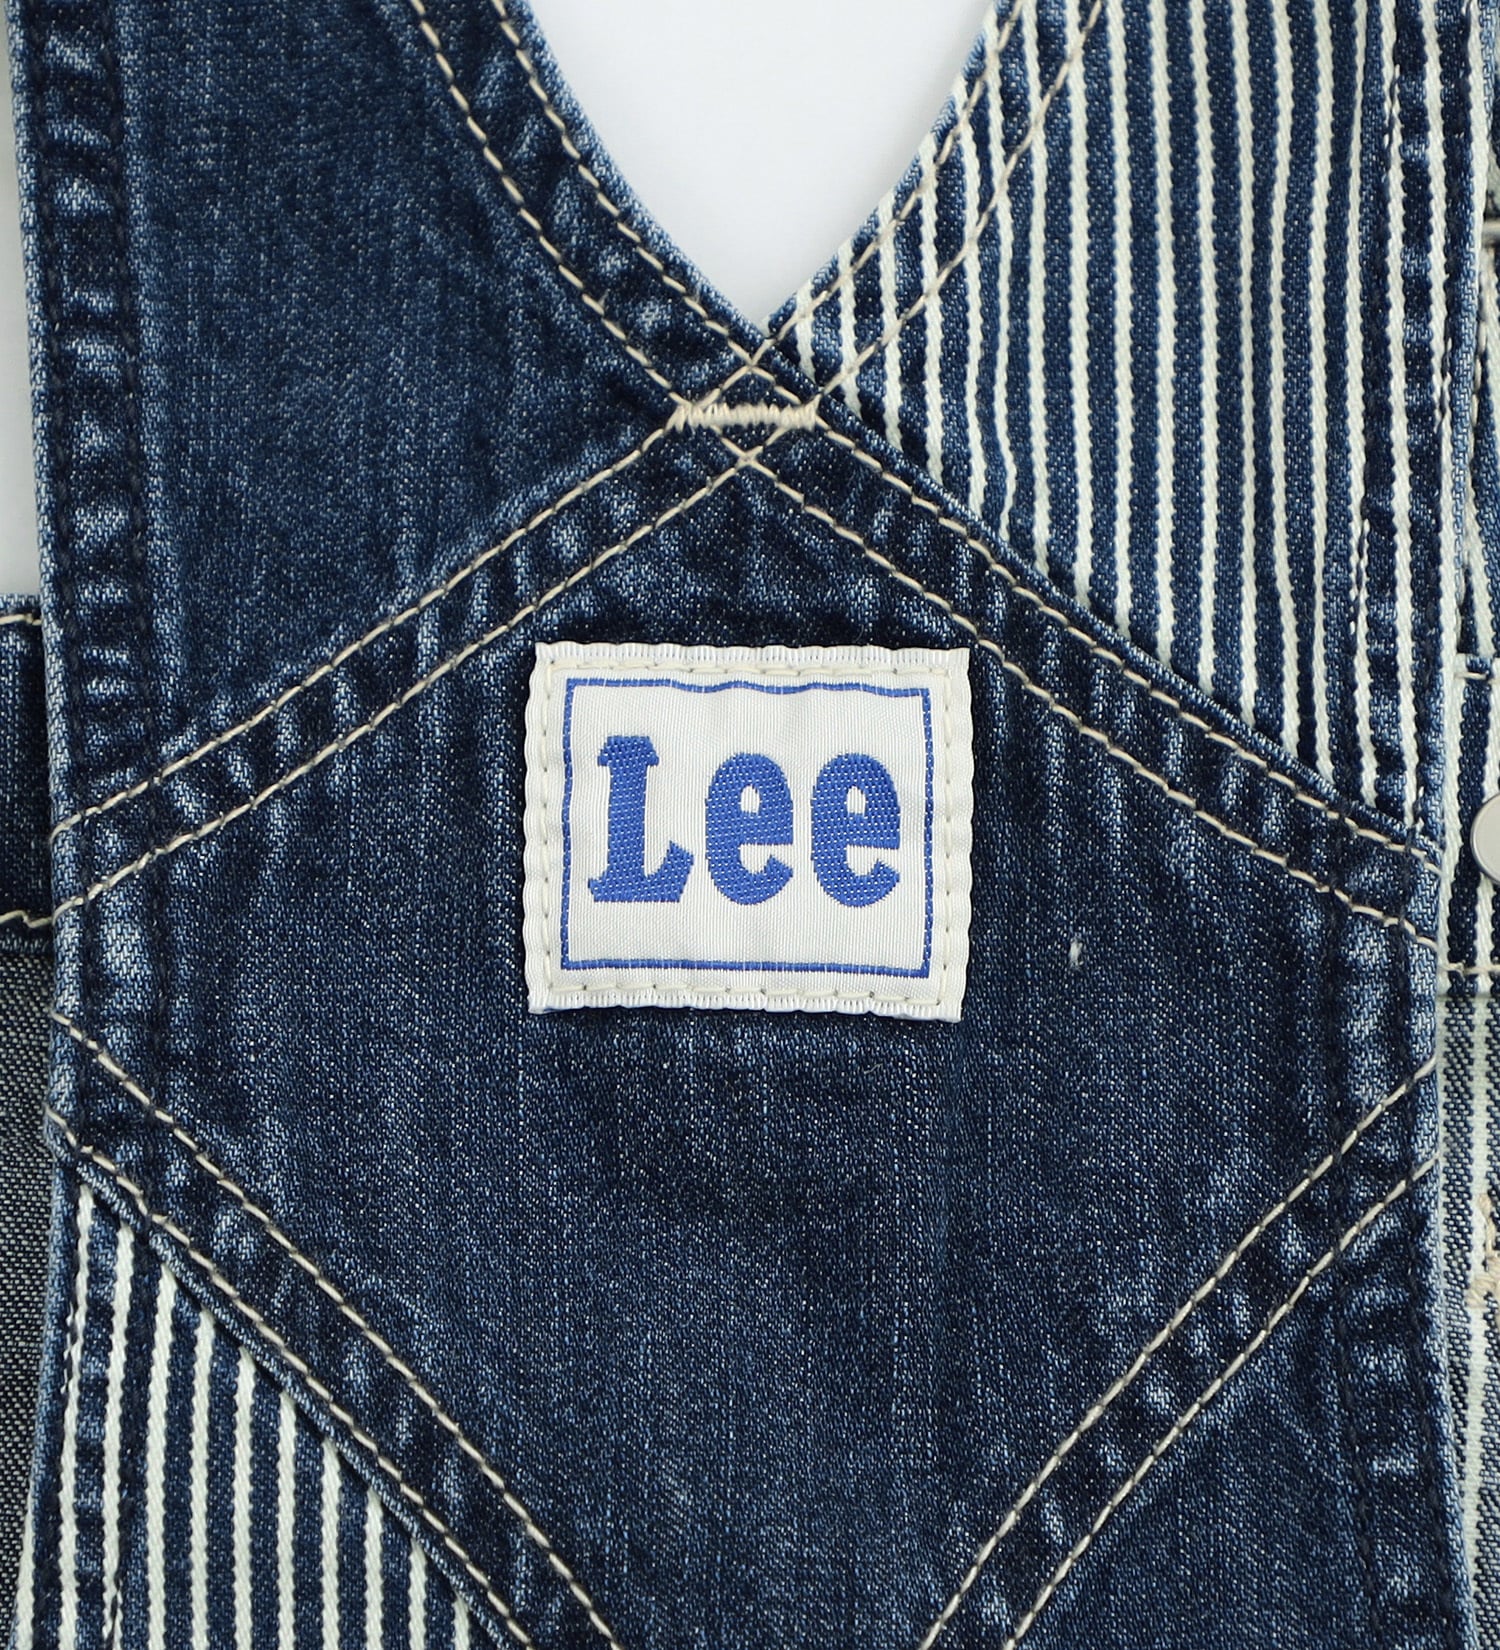 Lee(リー)の【110/120cm】キッズオーバーオールスカート クレイジーパターン|オールインワン/ジャンパースカート/キッズ|リメイク